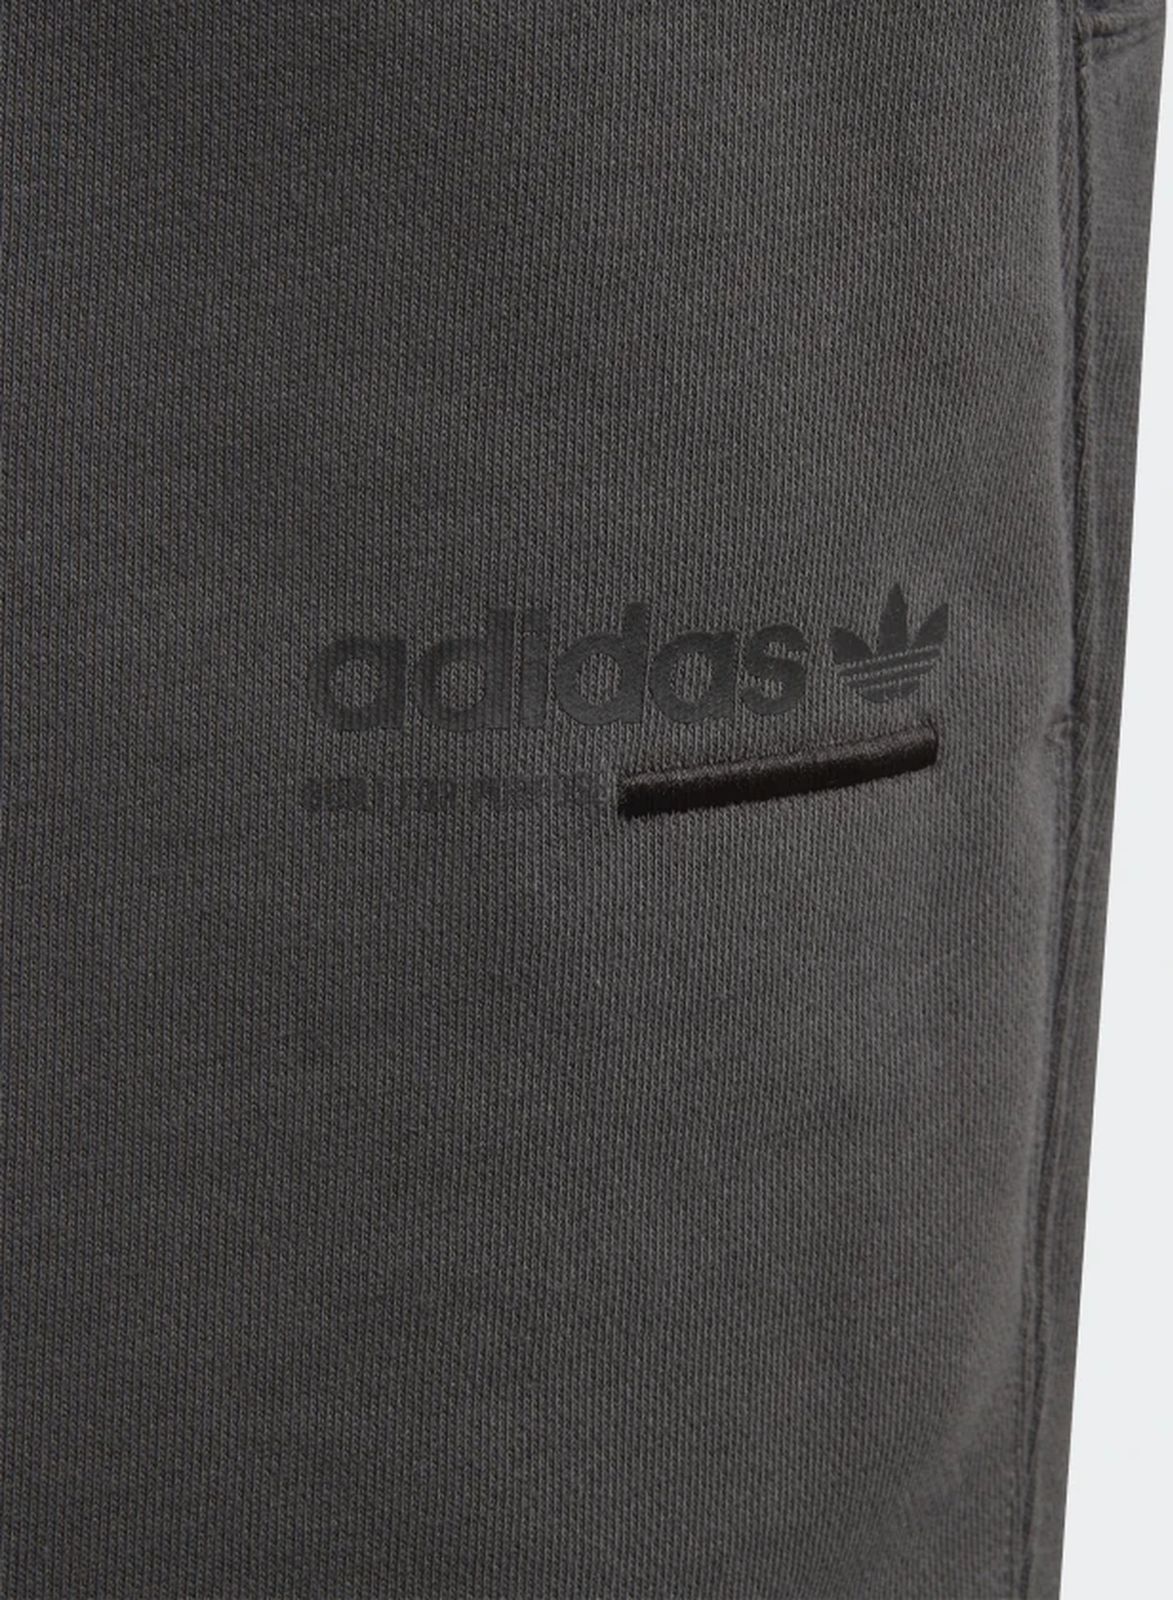    Adidas Kaval Shorts, : , . DV2376.  146